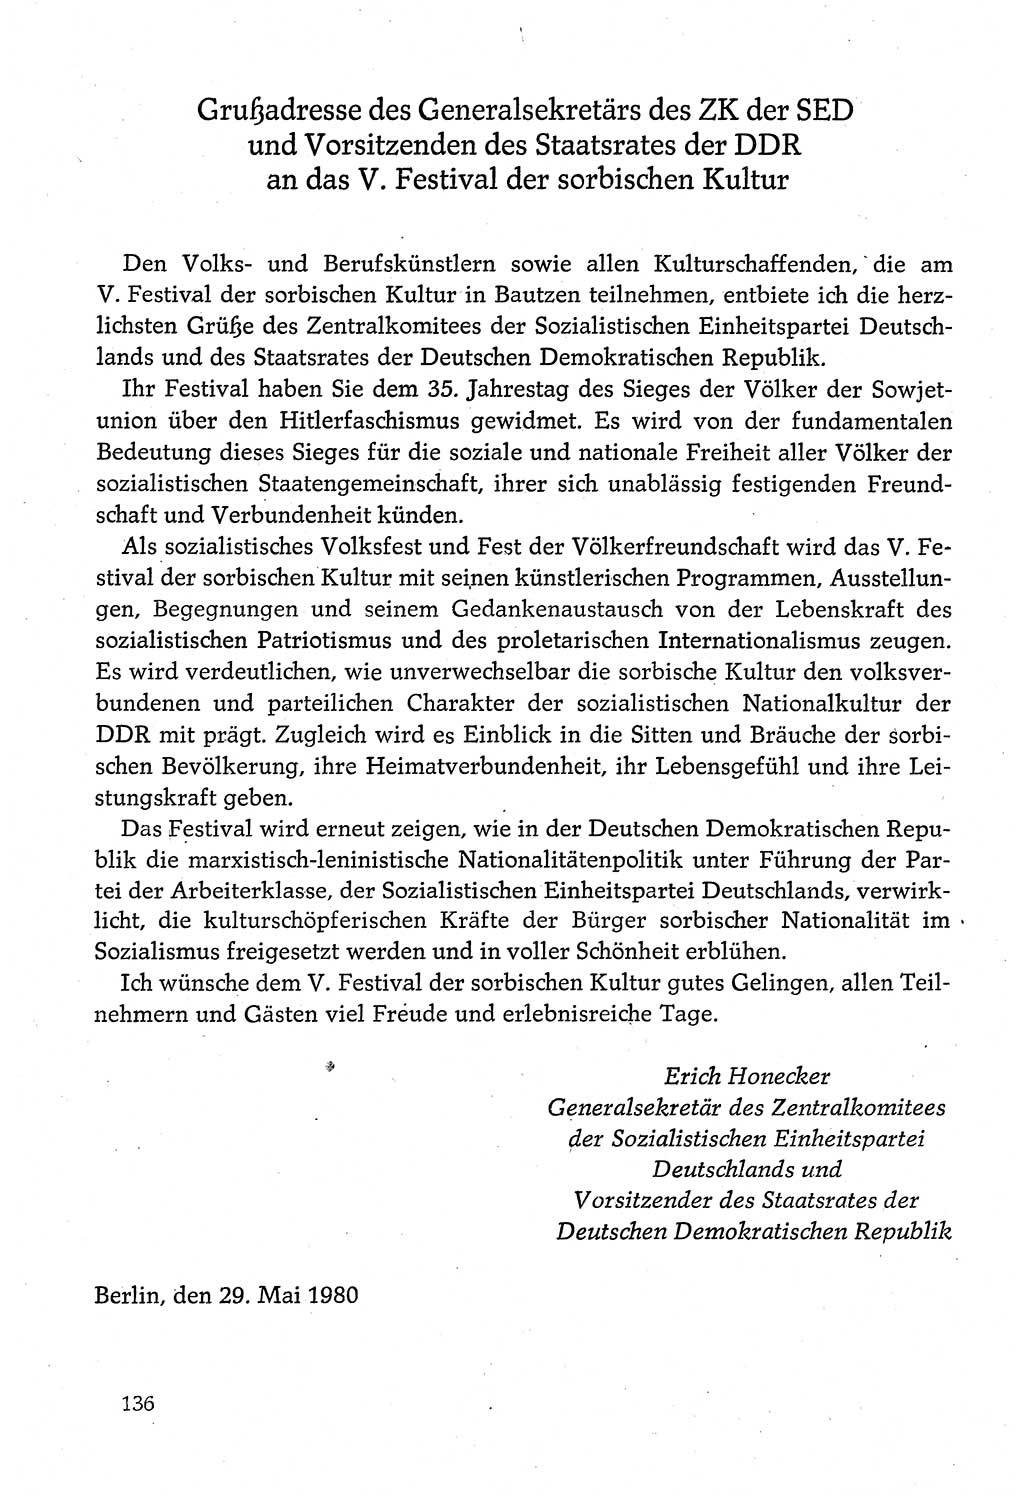 Dokumente der Sozialistischen Einheitspartei Deutschlands (SED) [Deutsche Demokratische Republik (DDR)] 1980-1981, Seite 136 (Dok. SED DDR 1980-1981, S. 136)